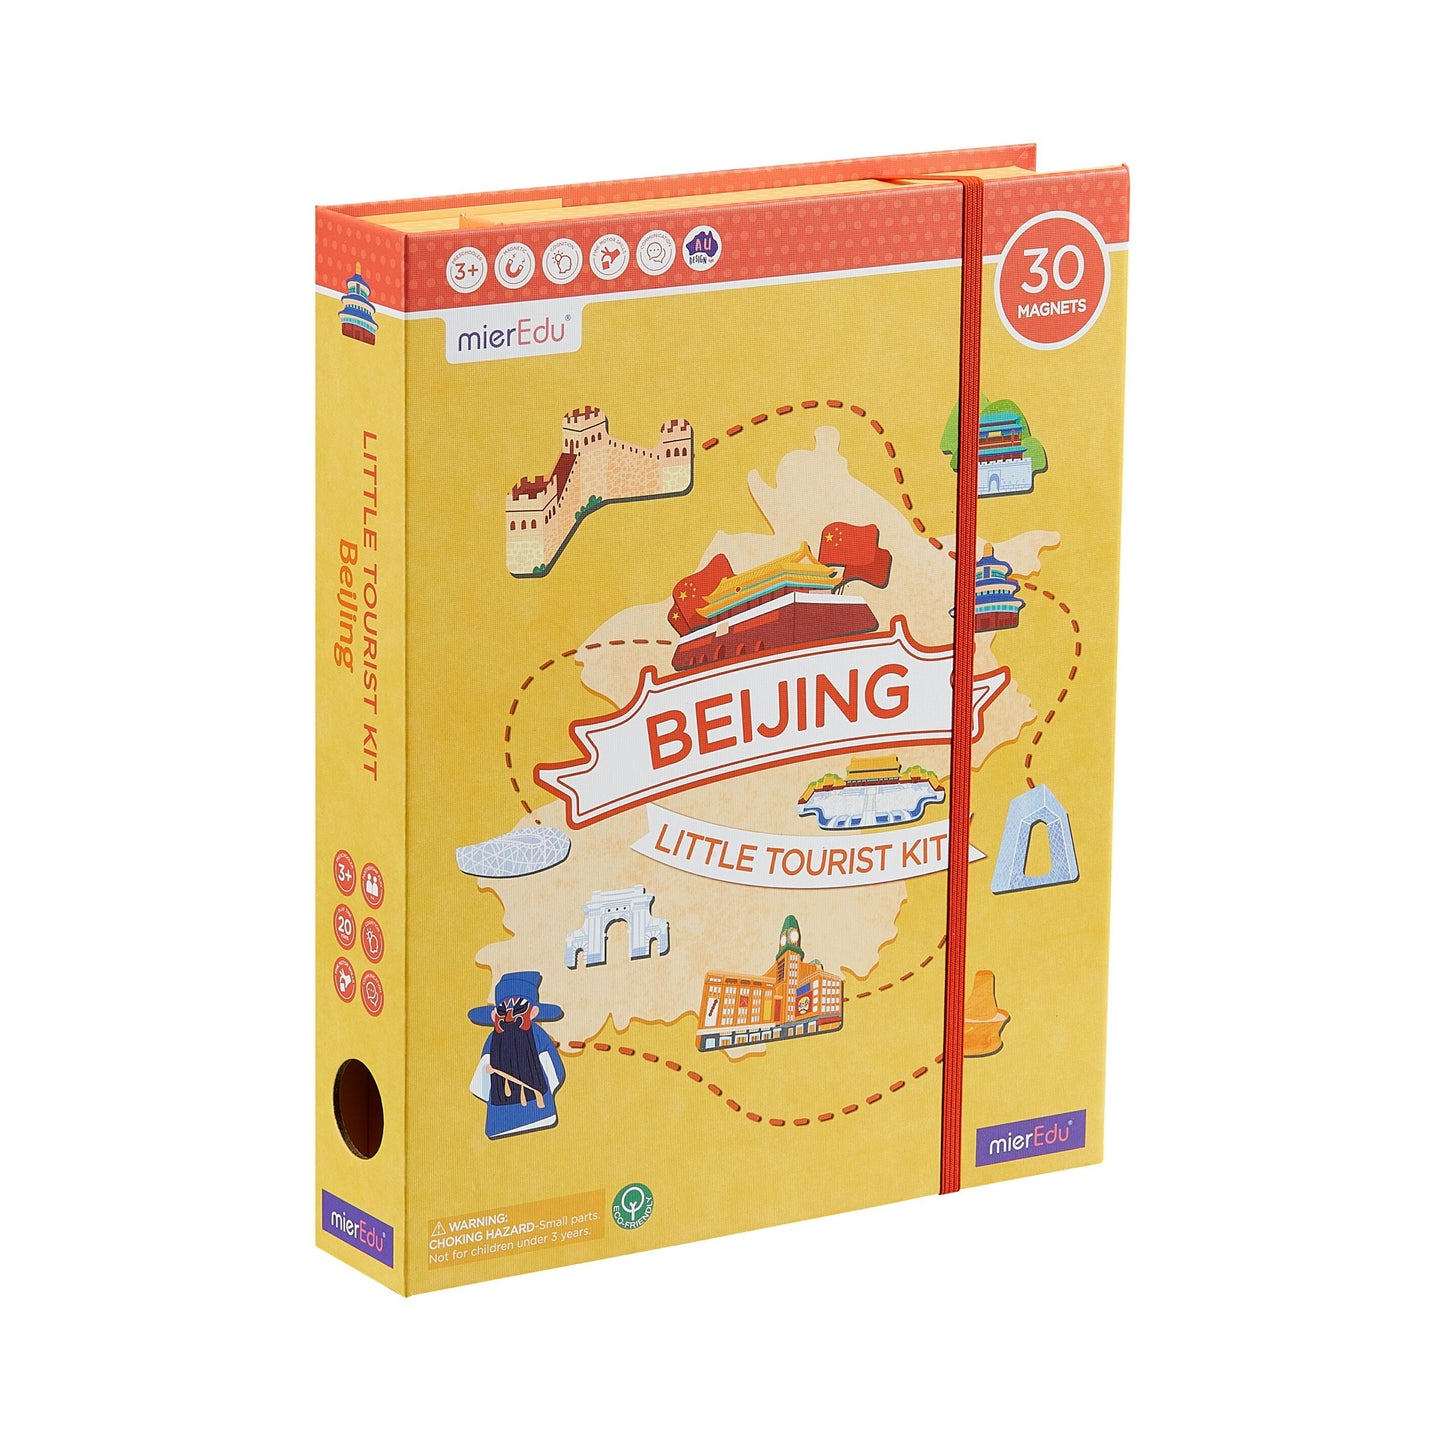 Little Tourist Kit - Beijing